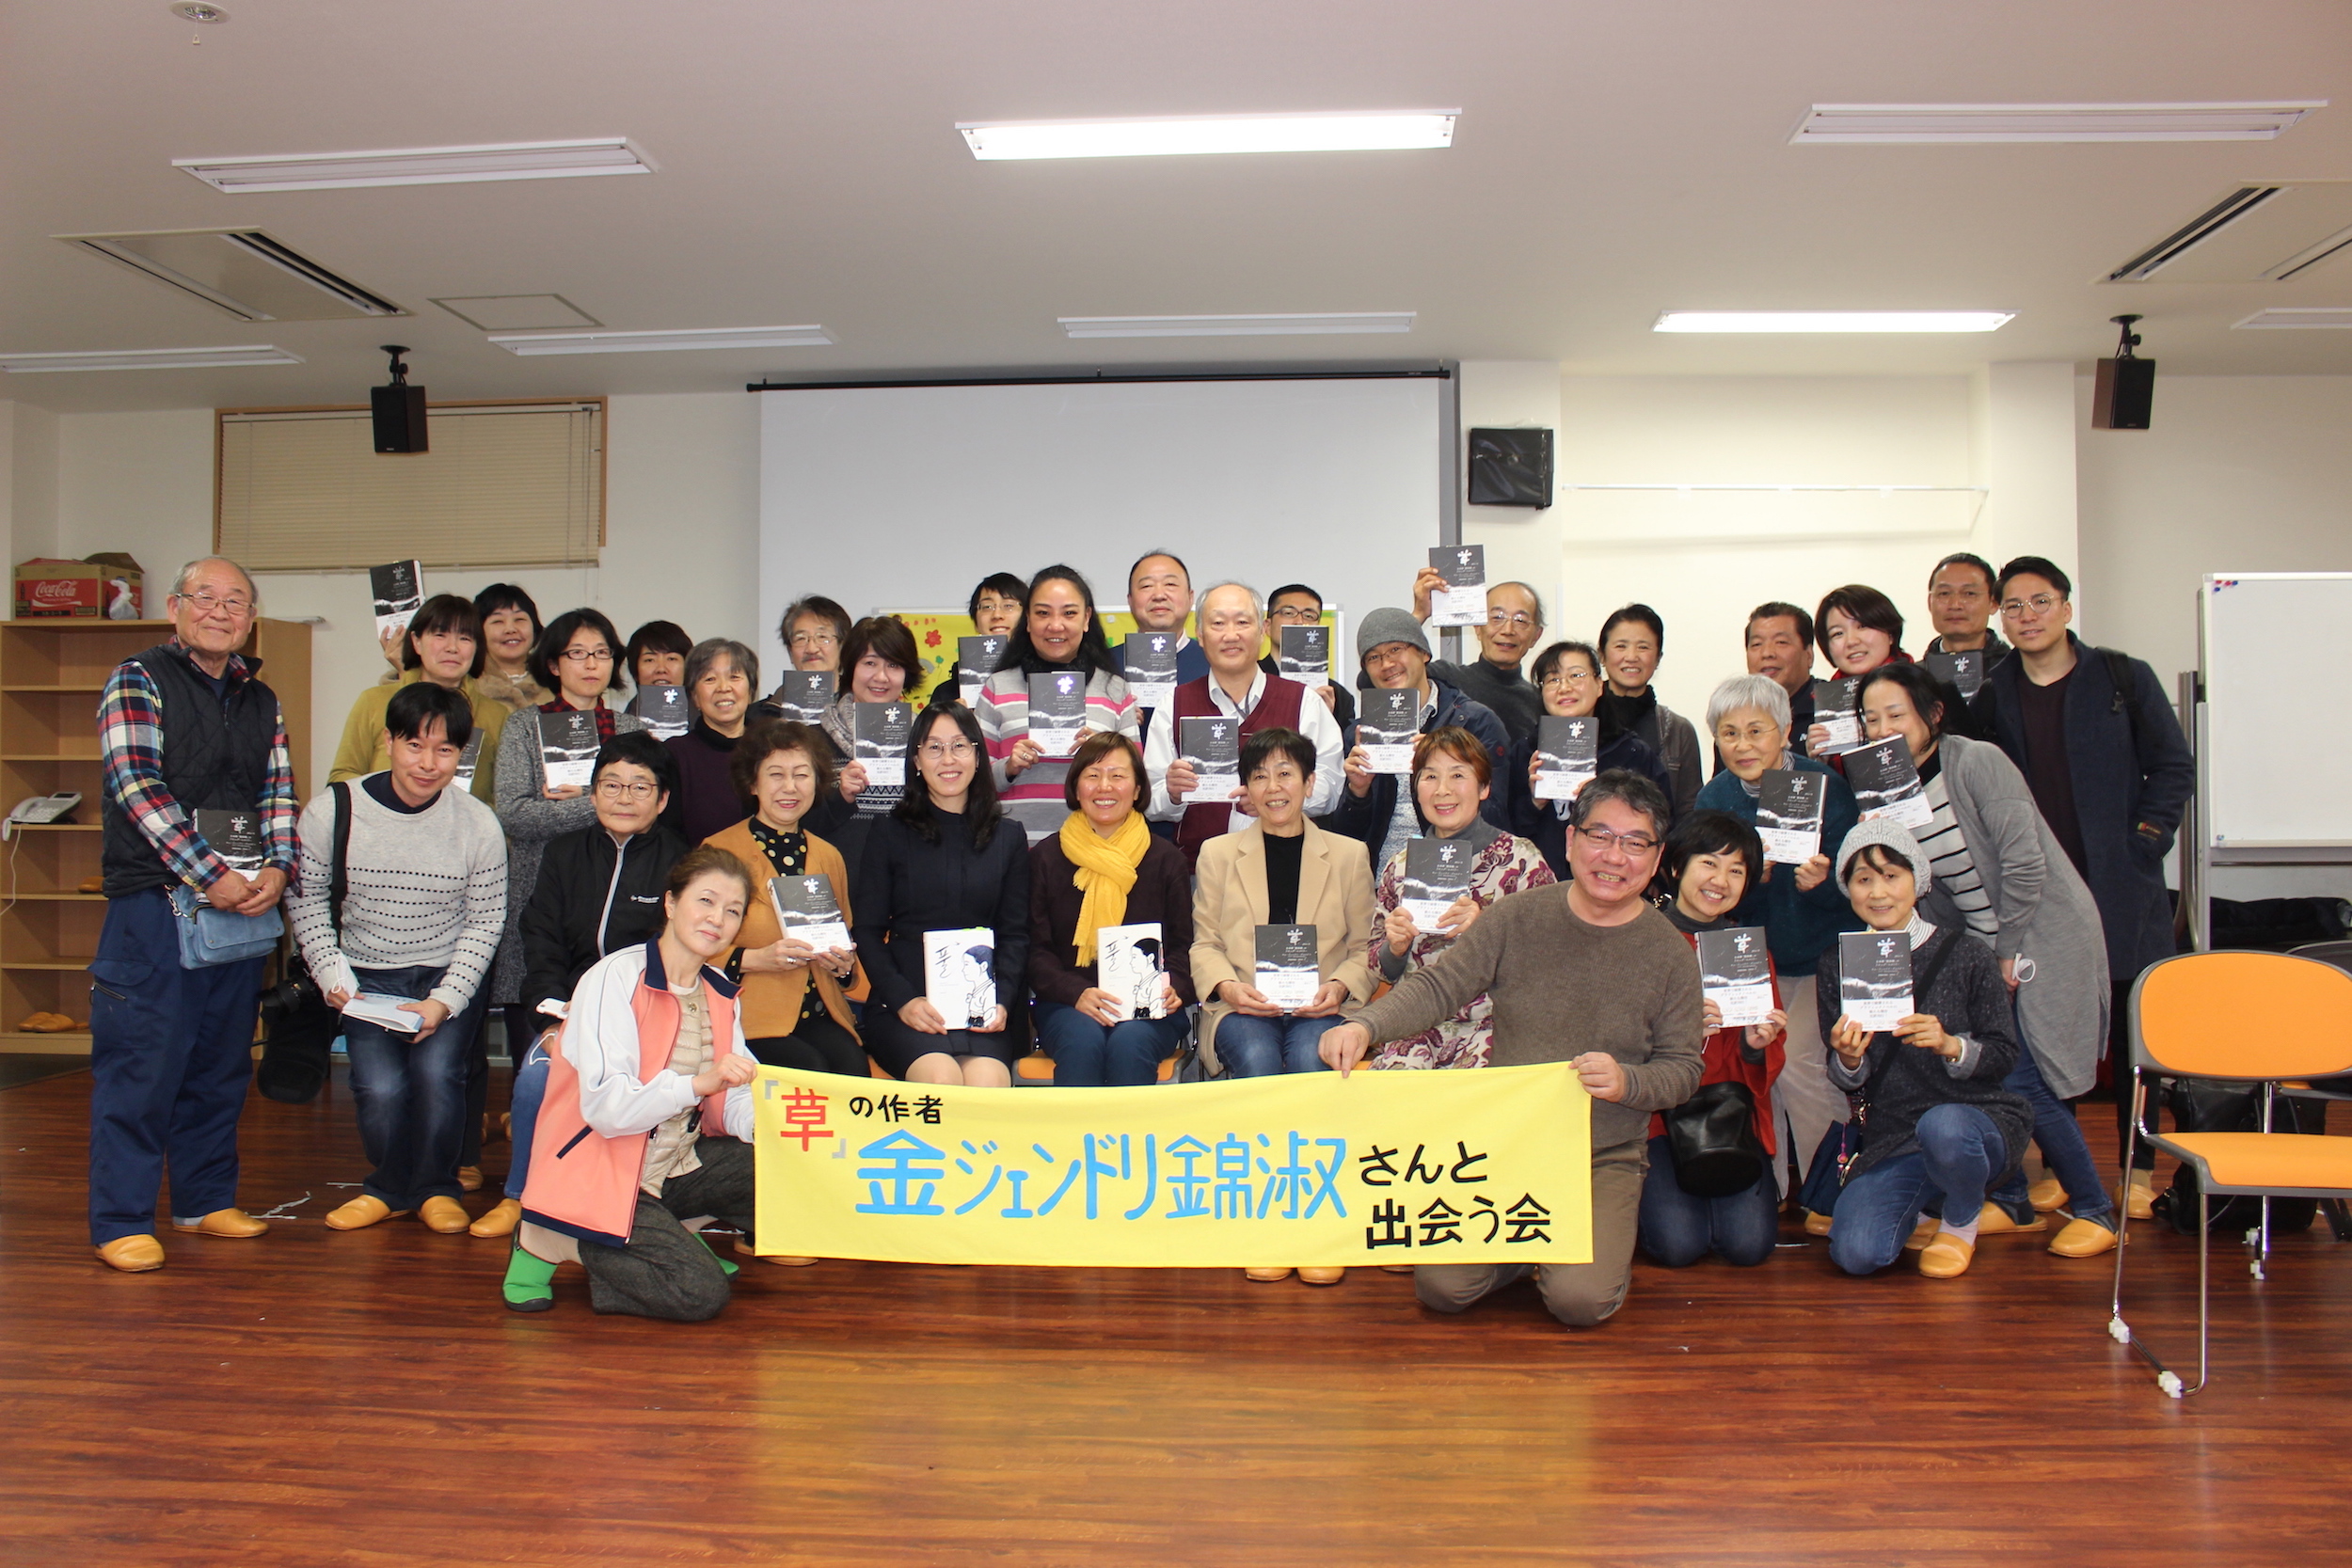 2월22일 오사카 작가와의 만남 기념사진. 오카하라 제공